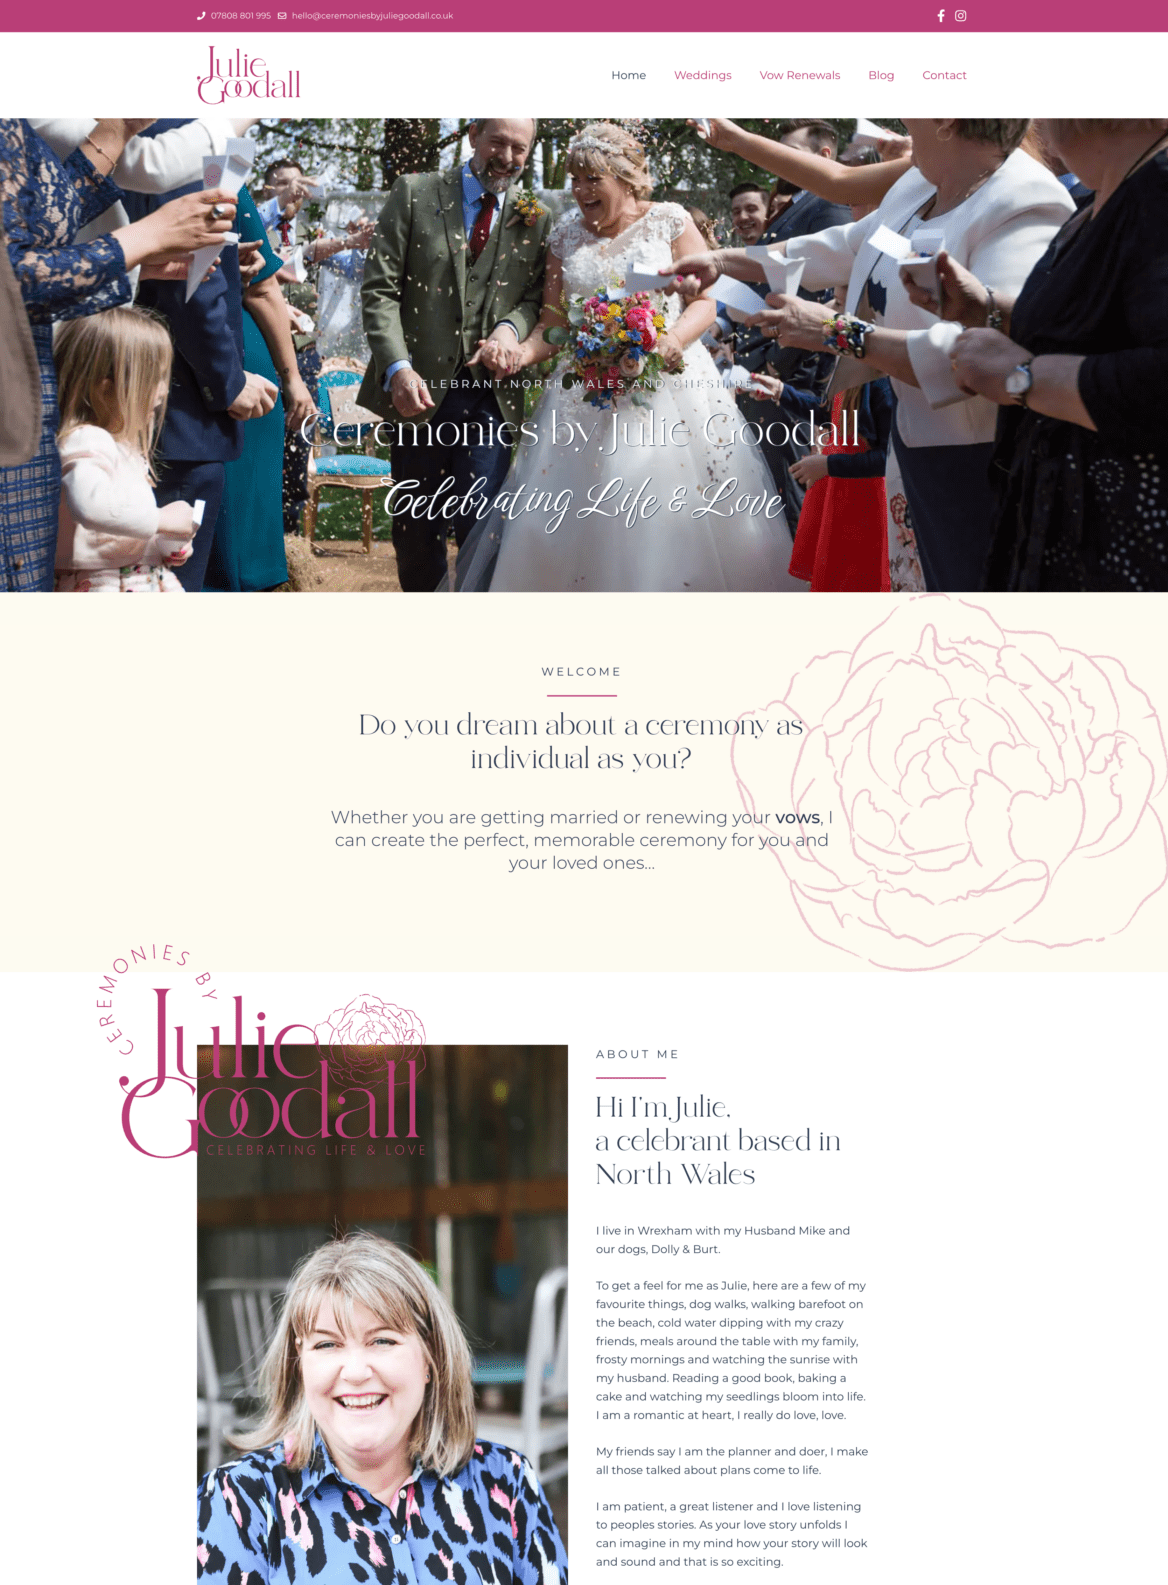 Ceremonies by Julie Goodall website